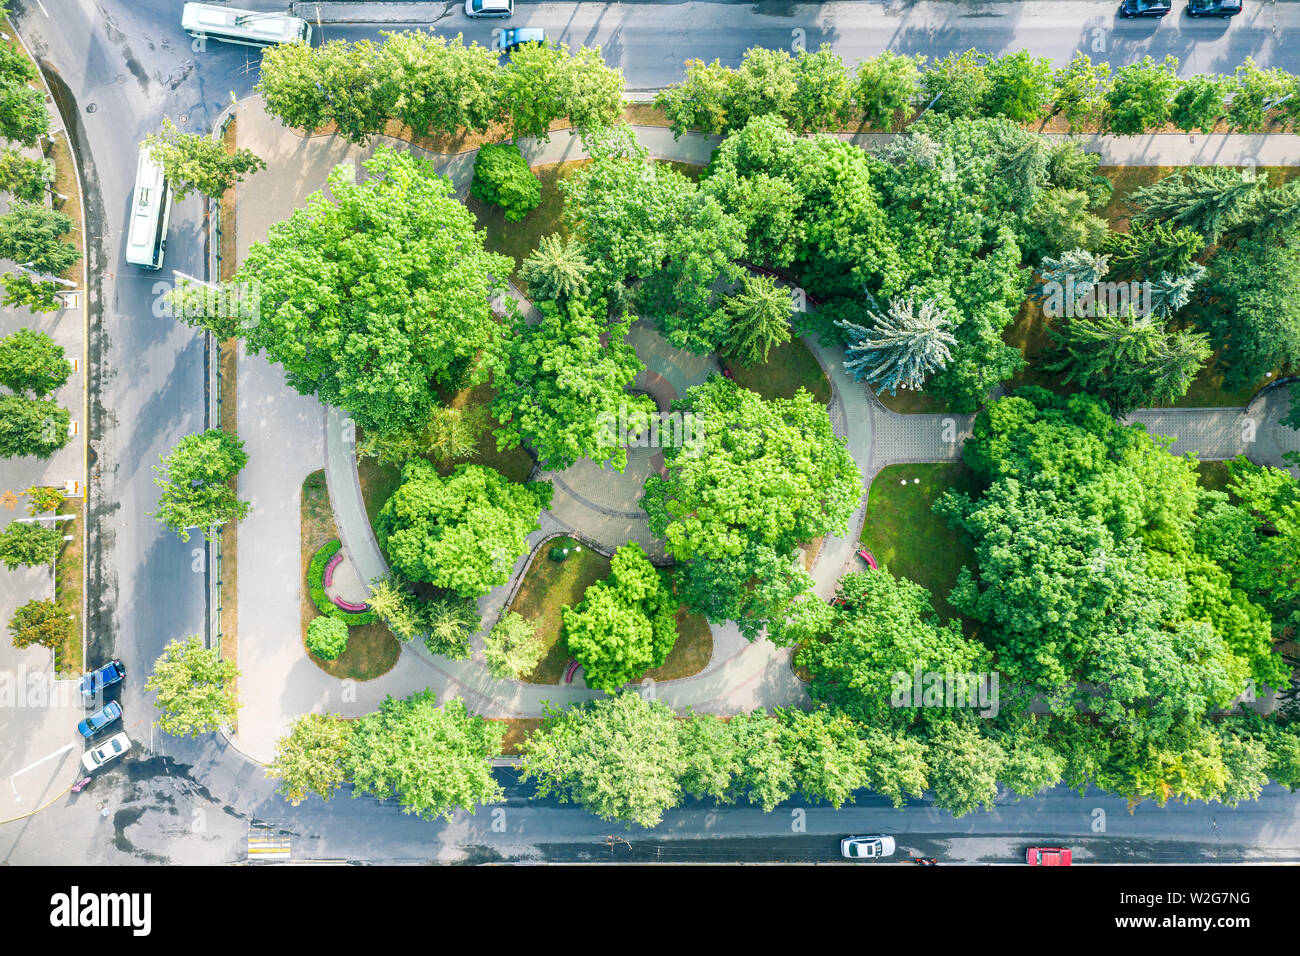 city boulevard. aerial top view of green trees growing alongside asphalt sidewalks Stock Photo